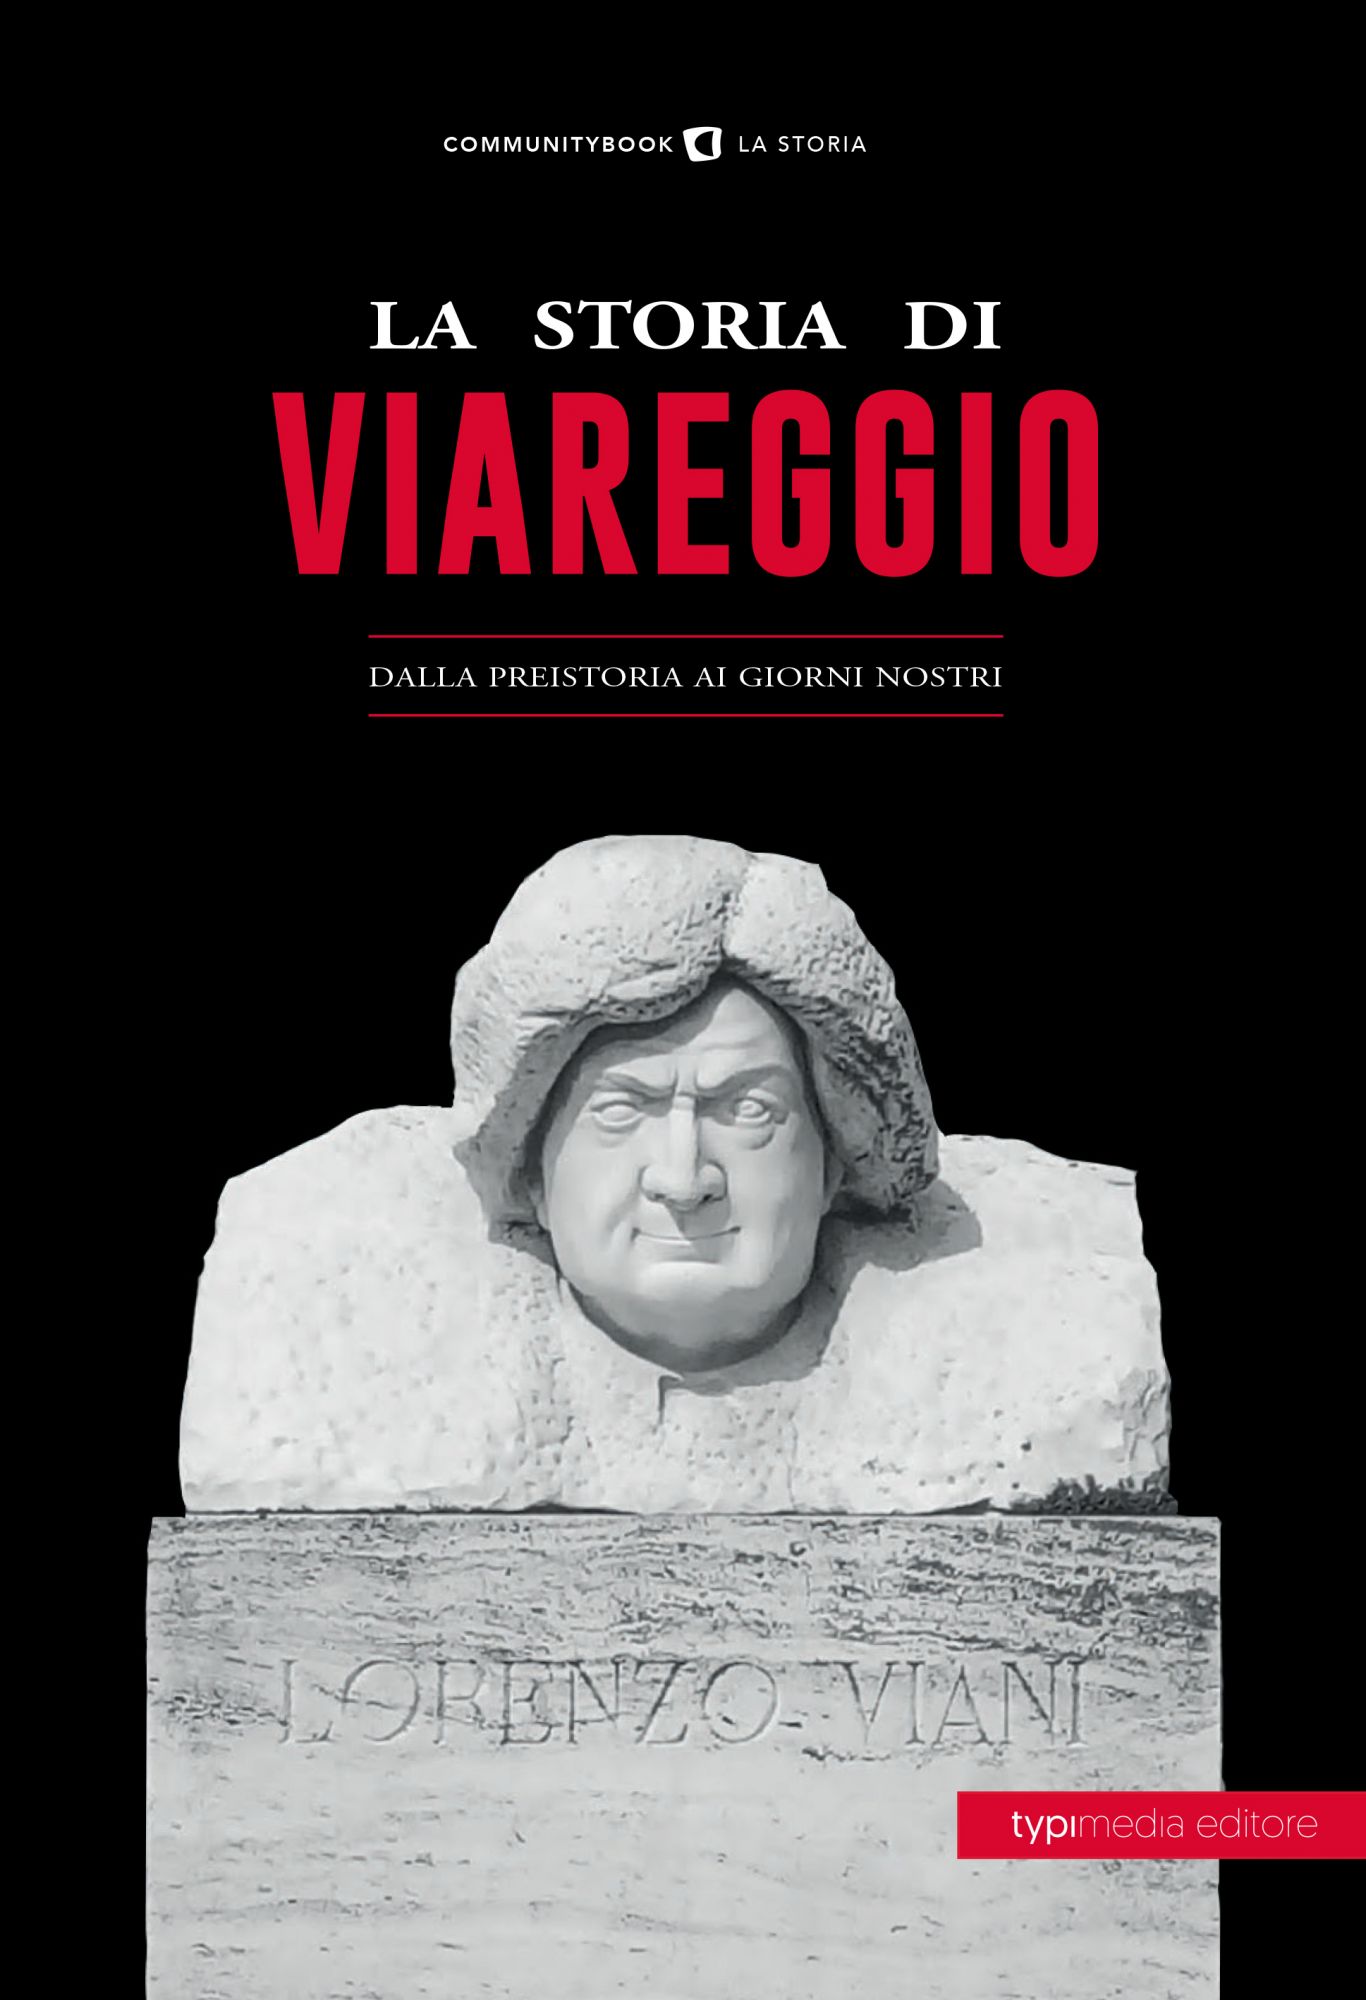 Tutta la storia di Viareggio in un libro